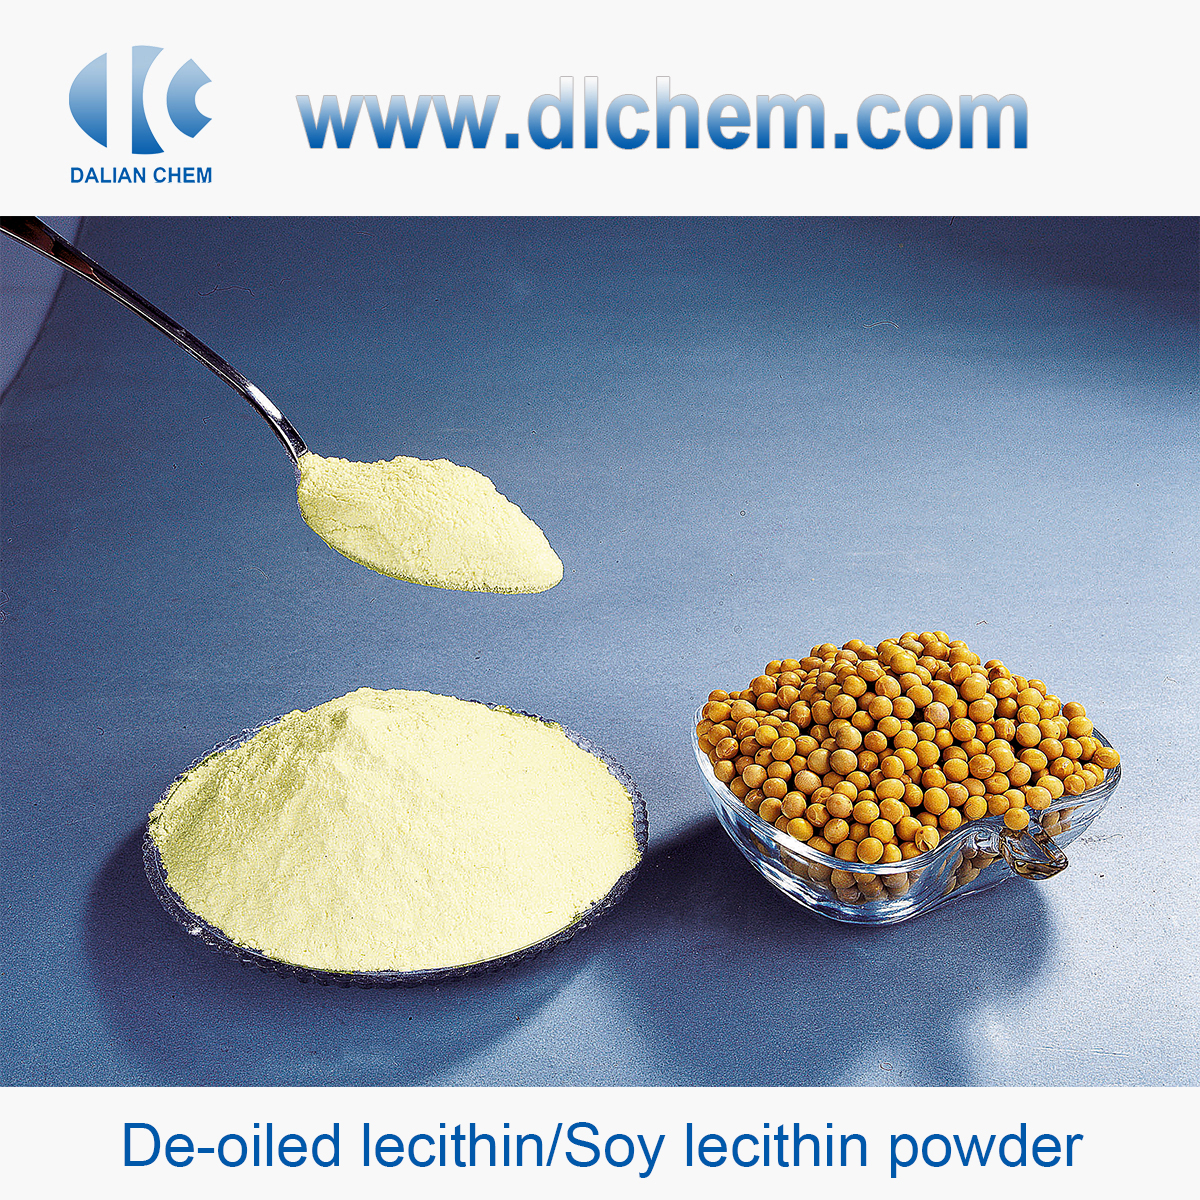 De-oiled lecithin/Soy lecithin powder